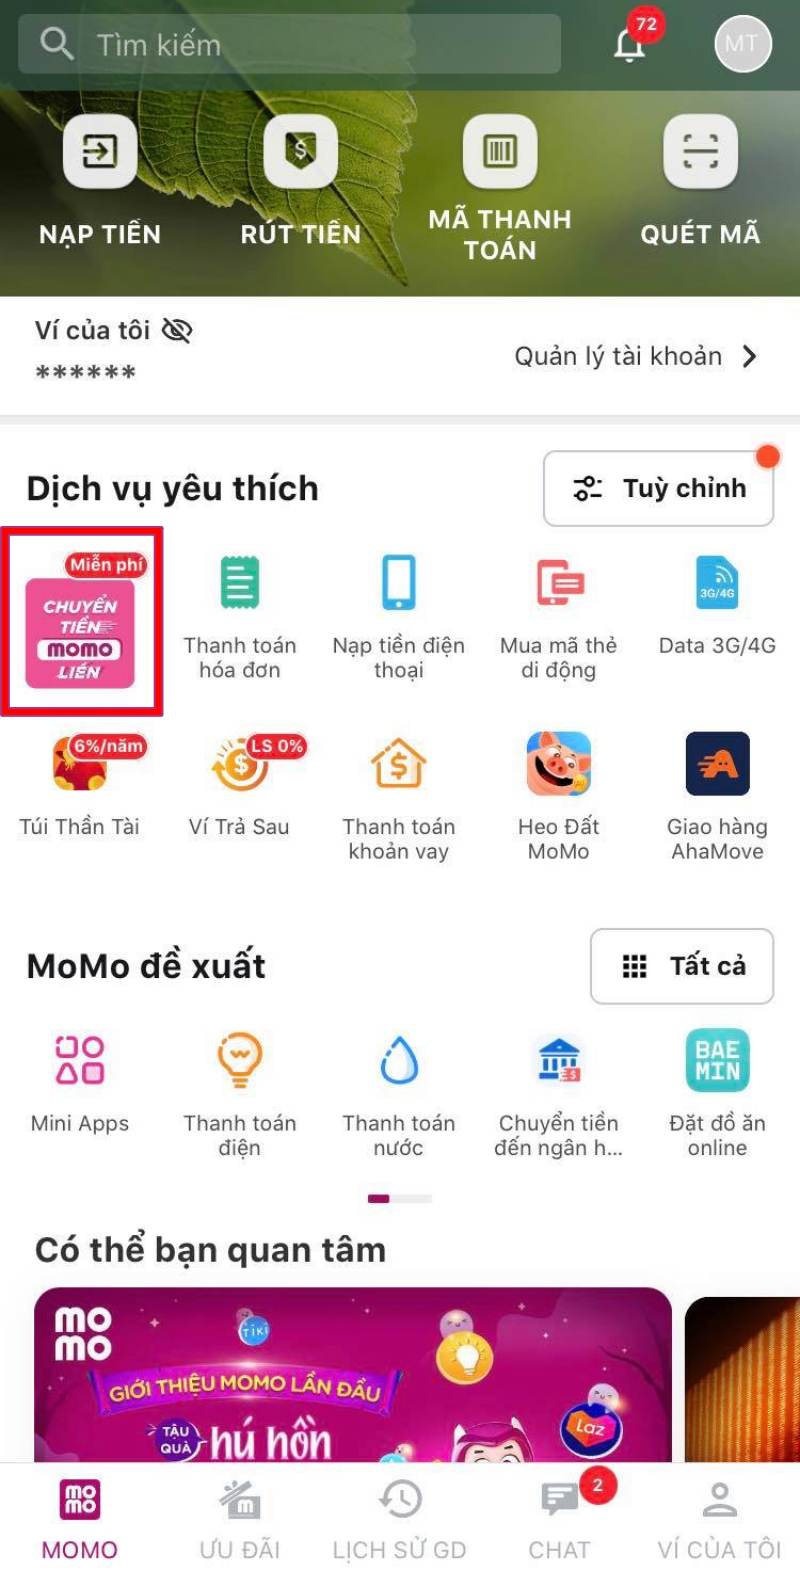 Chọn dịch vụ Chuyển tiền tại màn hình chính ví Momo